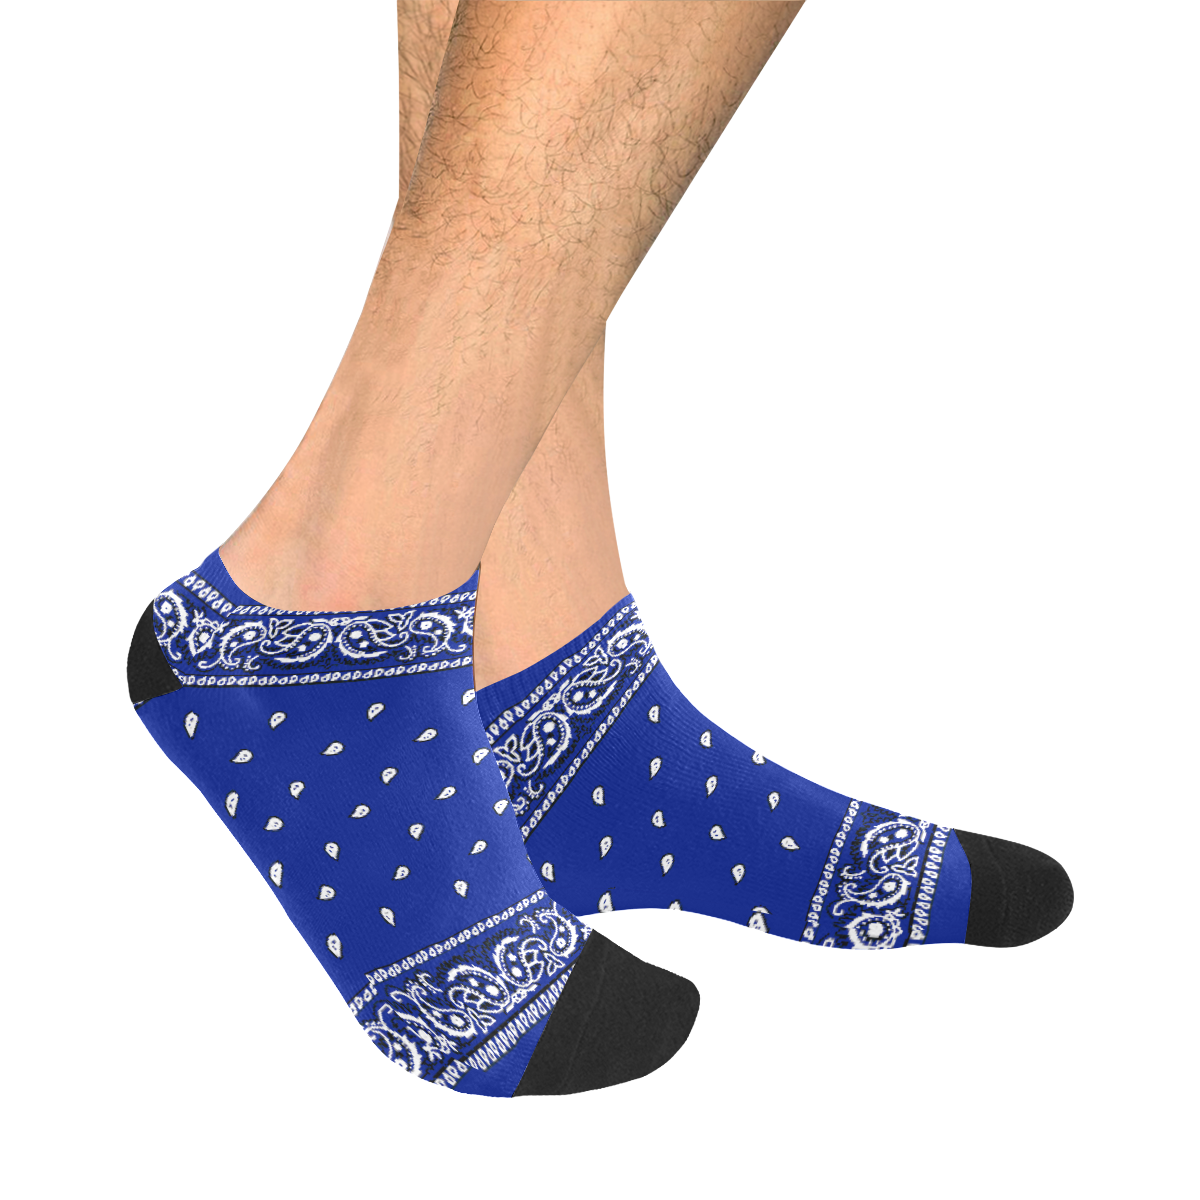 KERCHIEF PATTERN BLUE Men's Ankle Socks